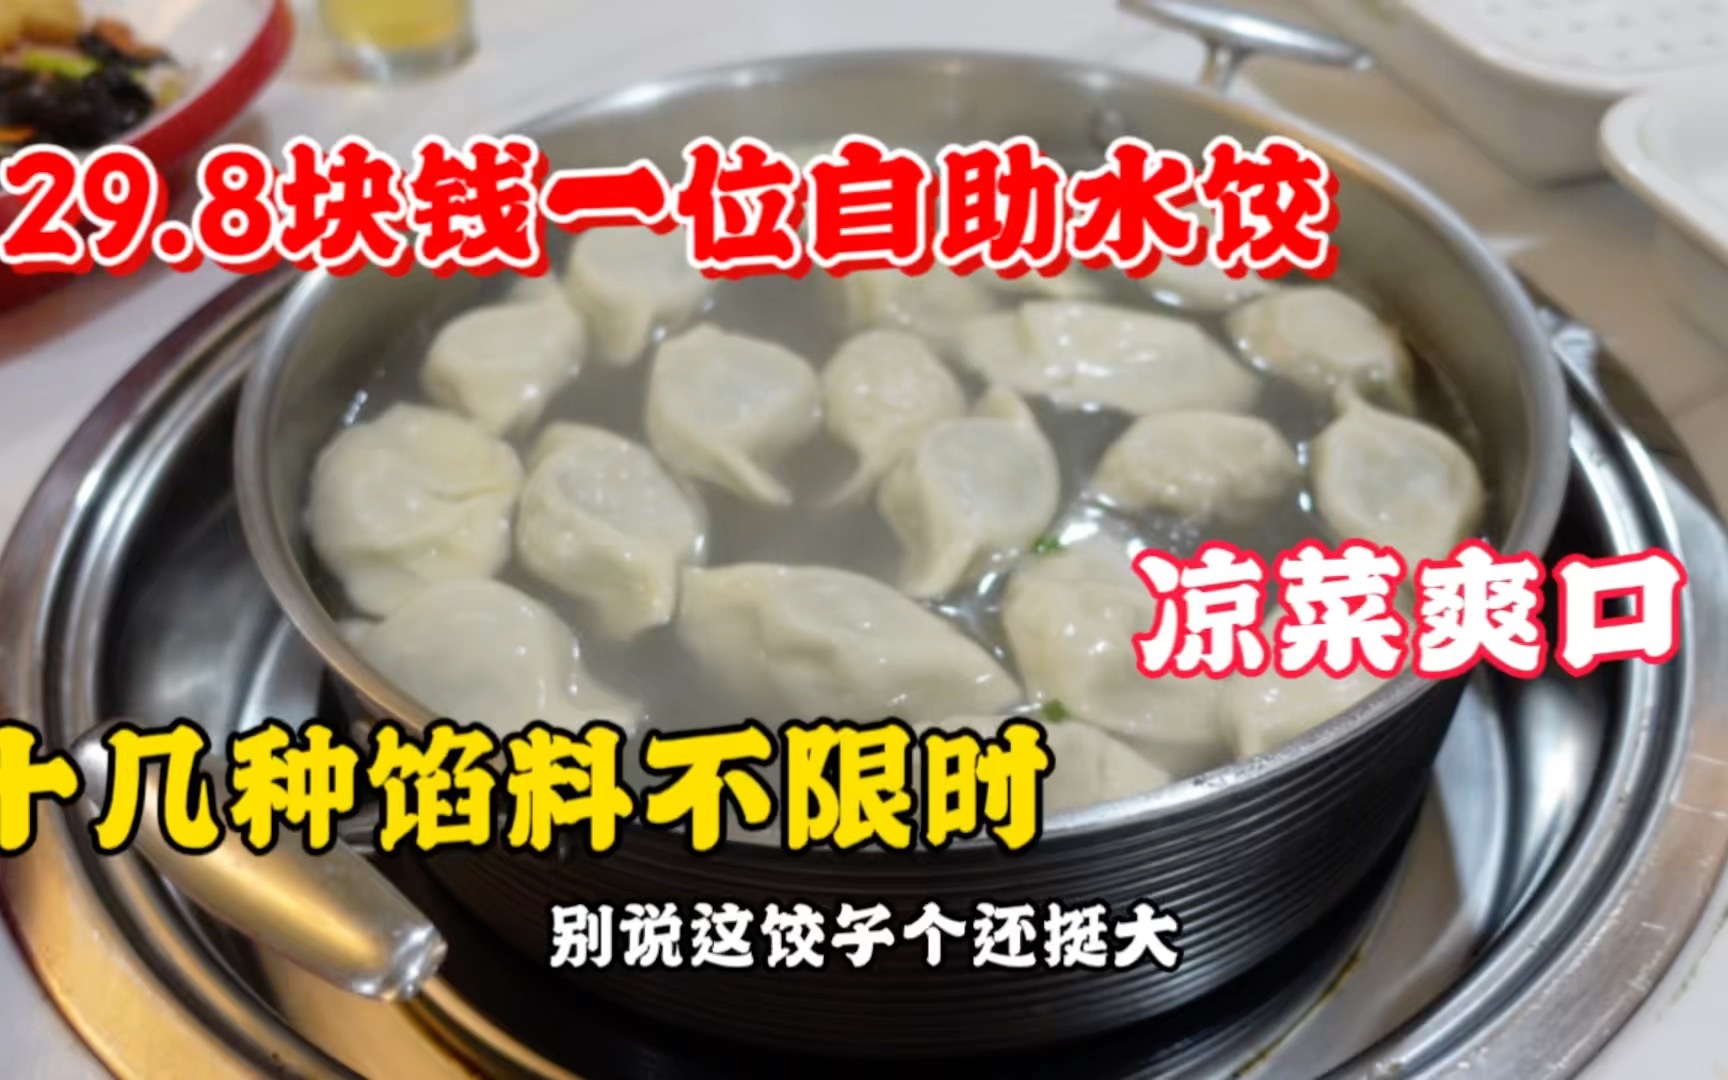 天津最便宜的自助水饺，29.8元一位不限时，十几种馅料小菜特爽口